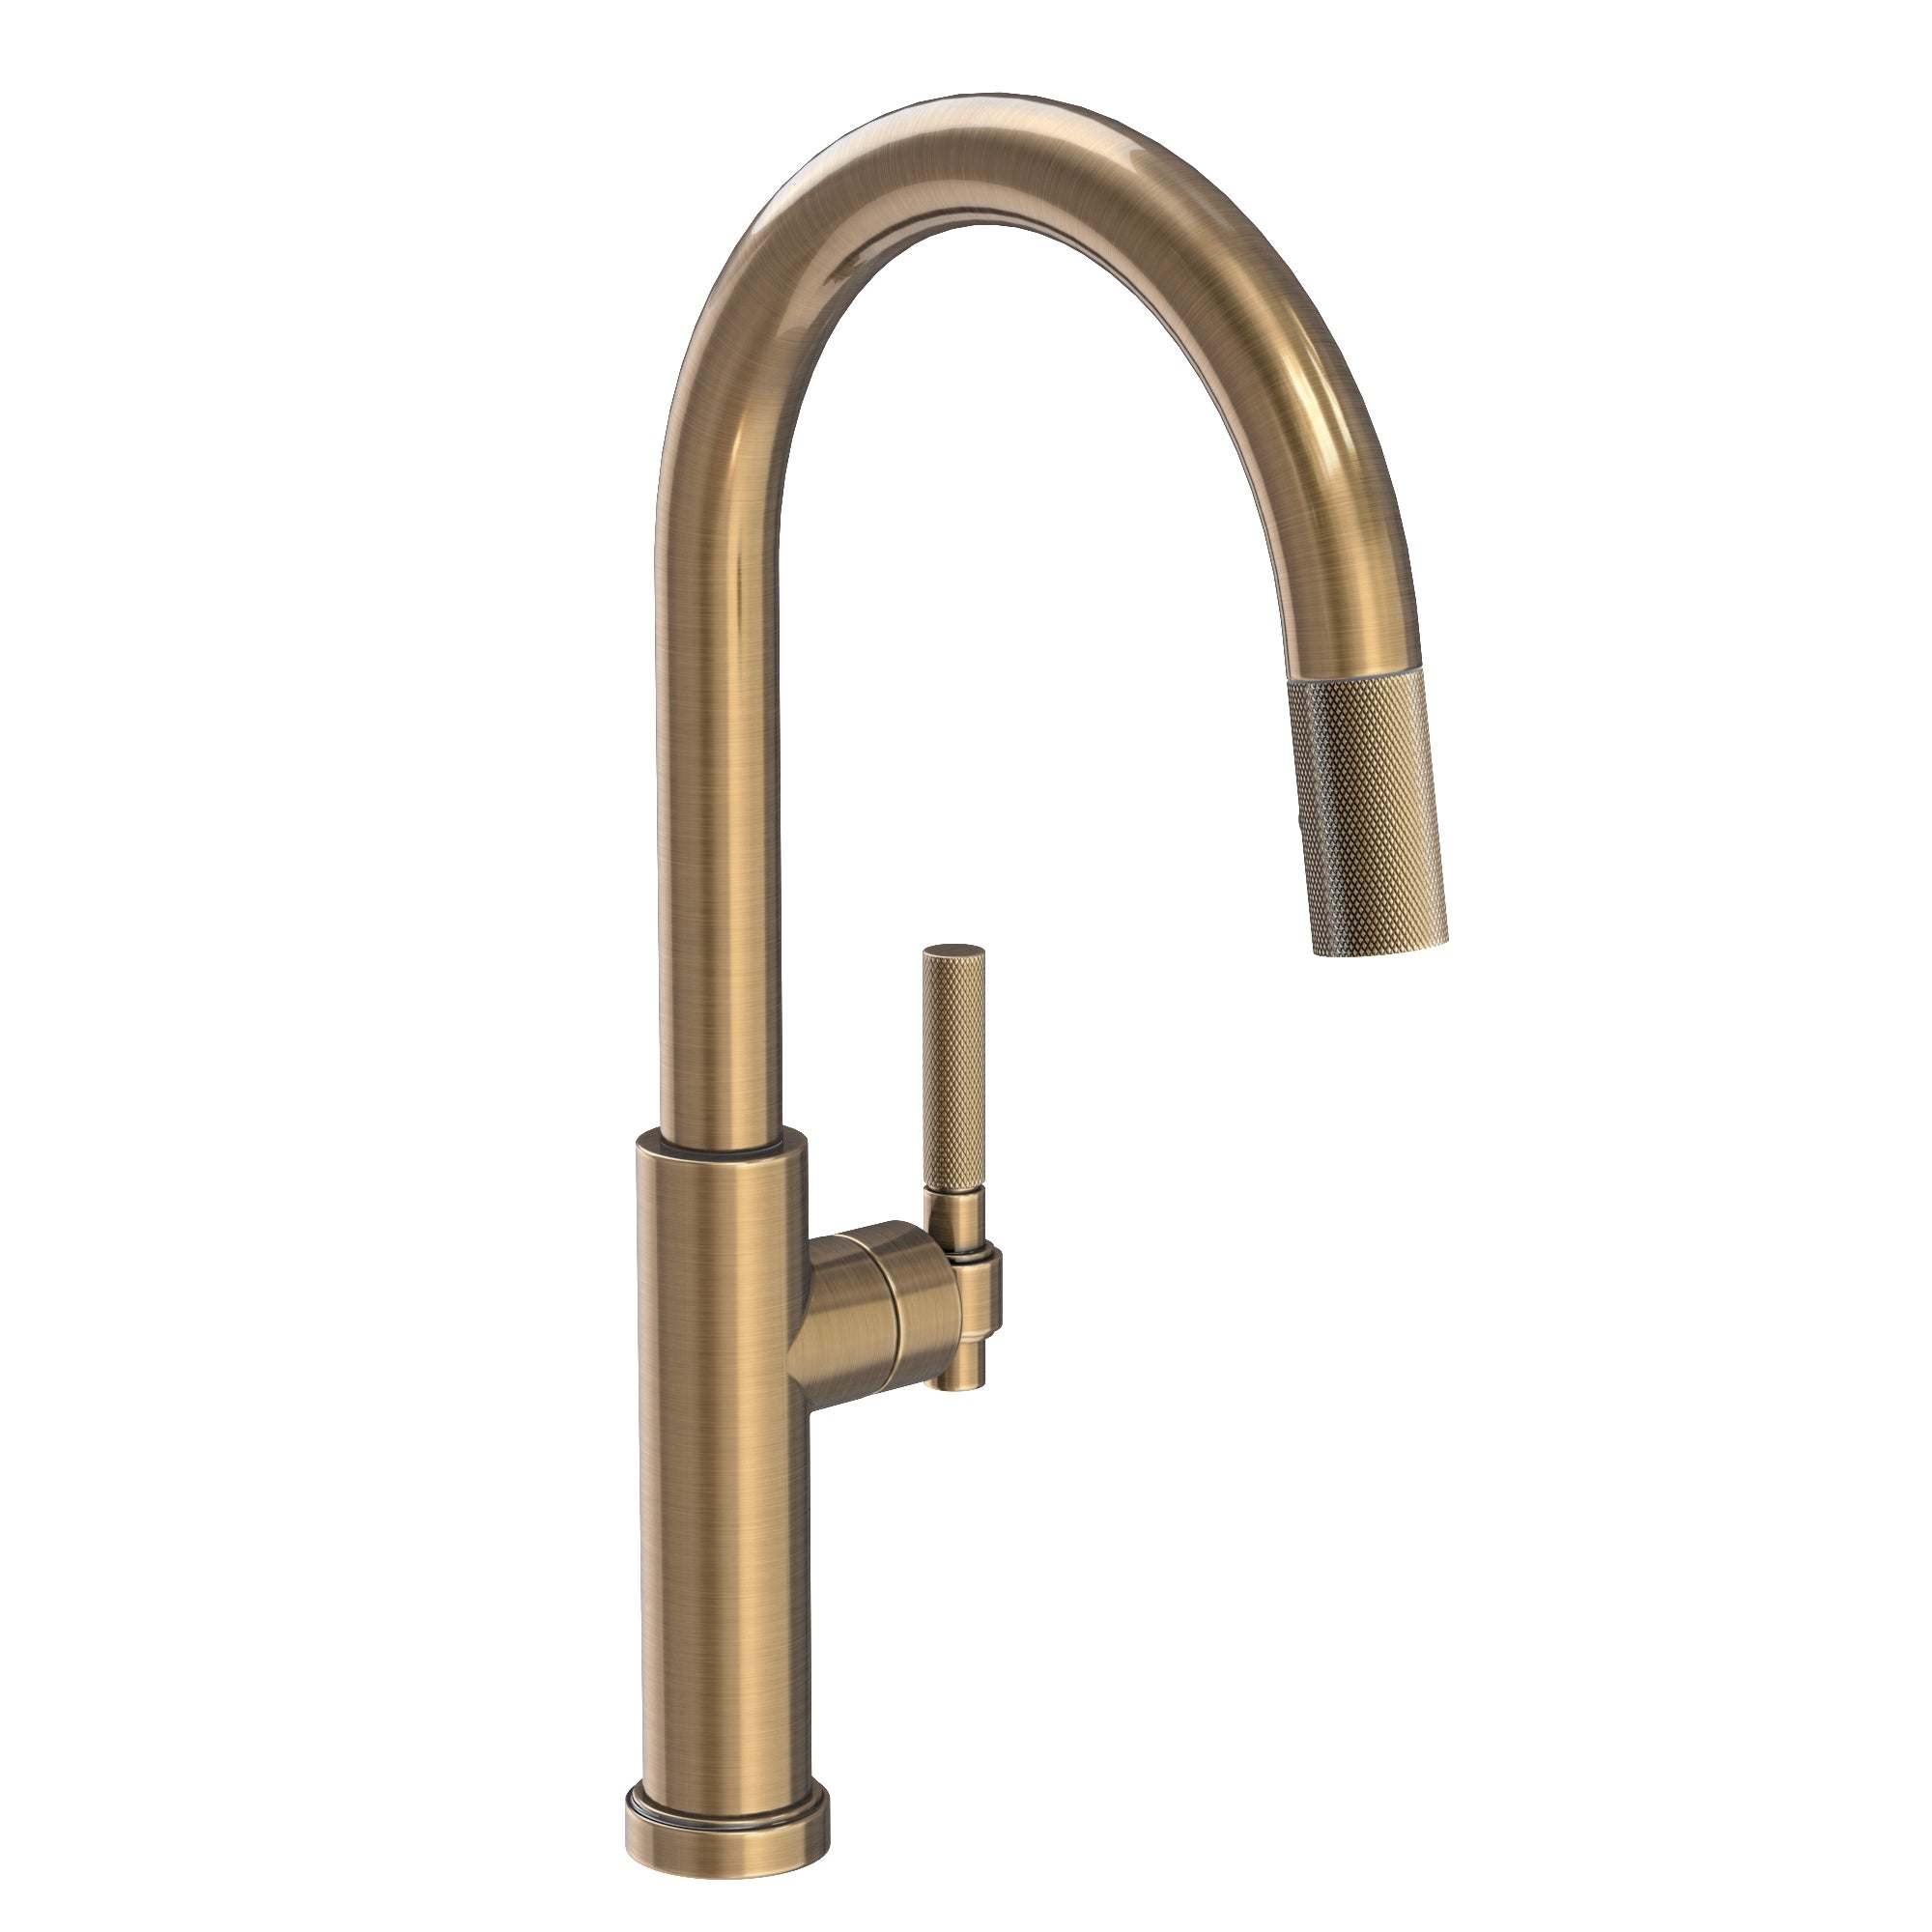 Newport Brass Online Store - Newport Brass Faucets